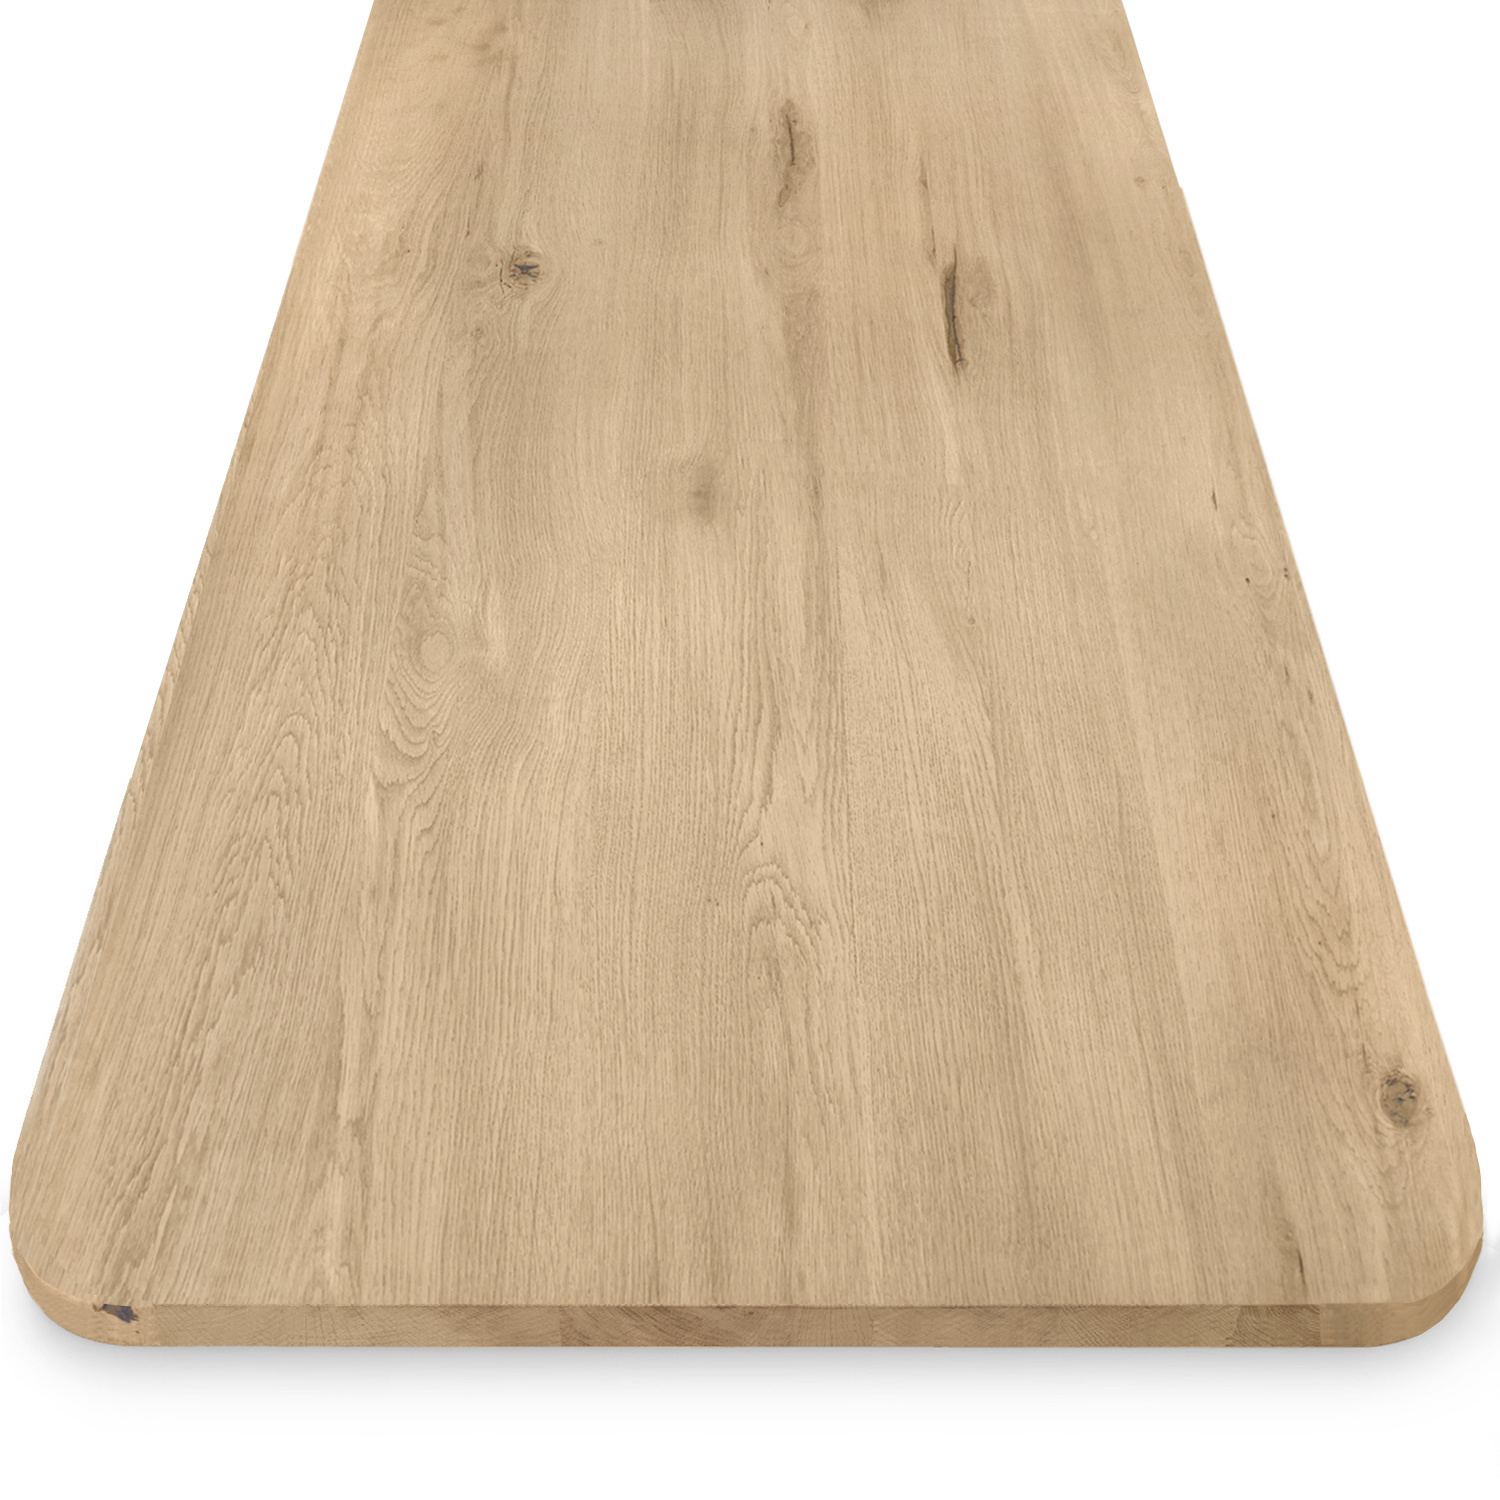  Eiken tafelblad met ronde hoeken - 4 cm dik (1-laag) - Diverse afmetingen - extra rustiek Europees eikenhout - met extra brede lamellen (circa 14-20 cm) - verlijmd kd 8-12%